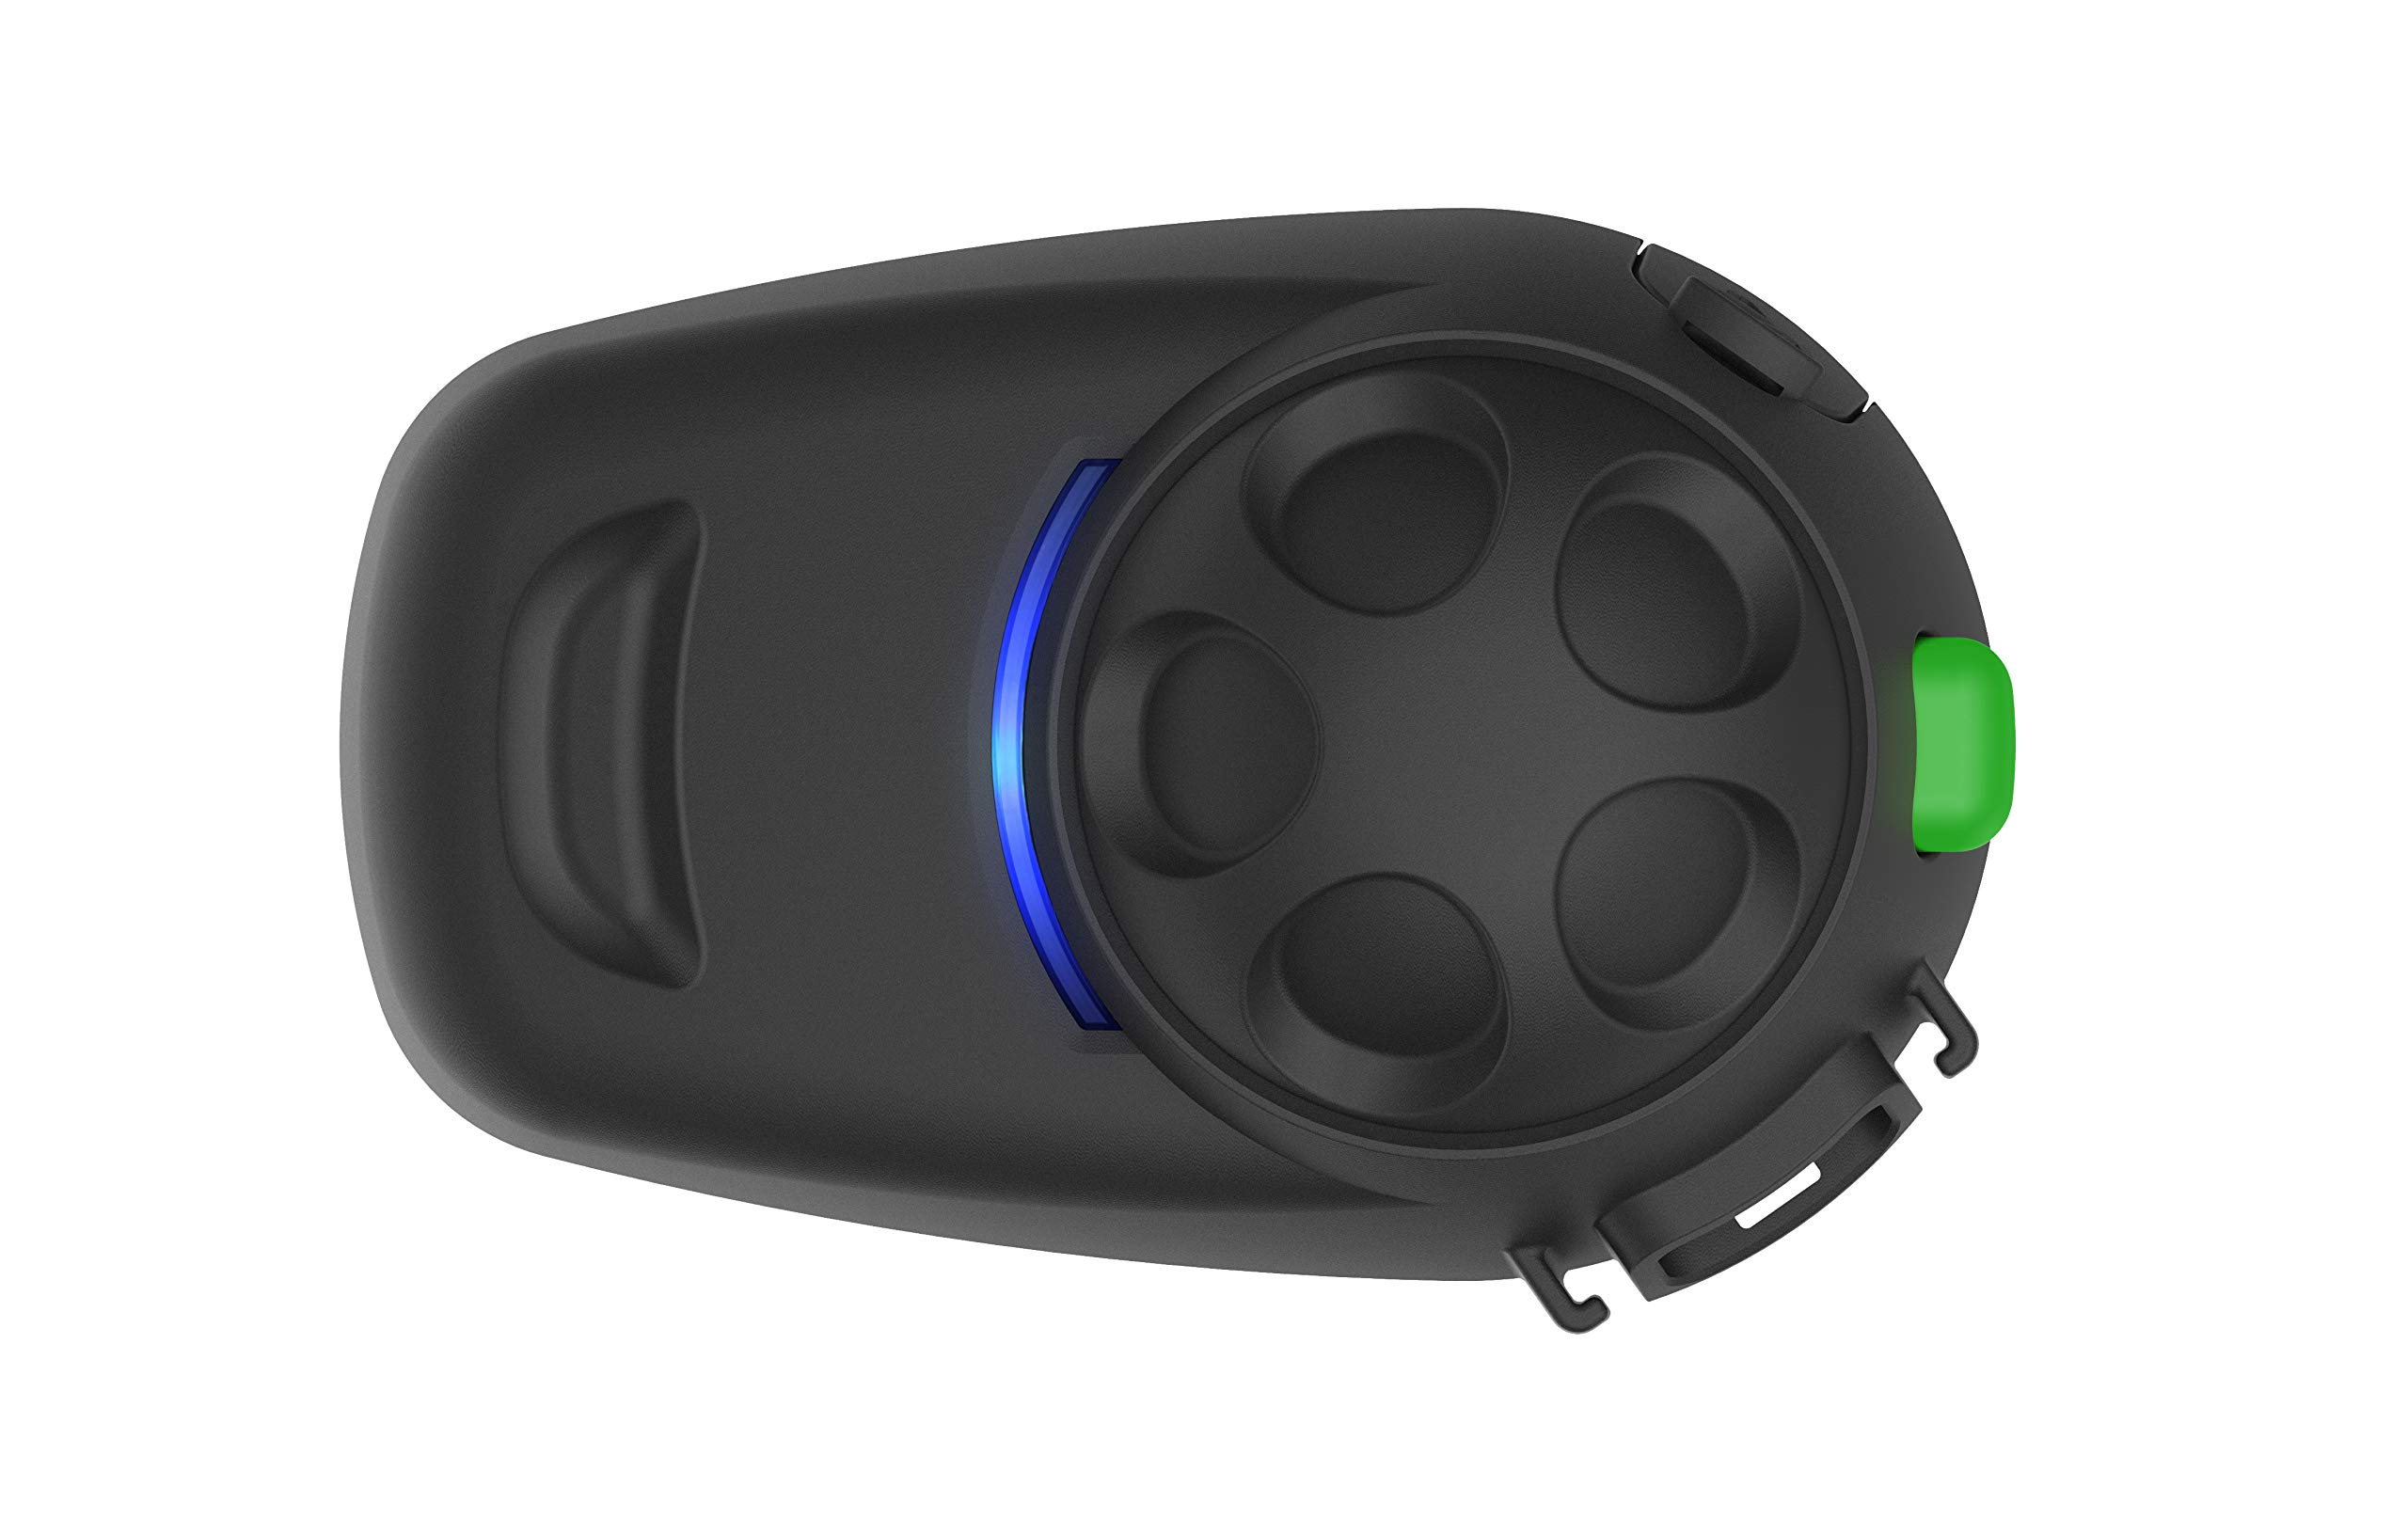 Sena SMH5 Multicom Bluetooth-Kommunikationssystem für Motorräder und Roller mit Schnellmontage-Helmklemmeinheit, schwarz